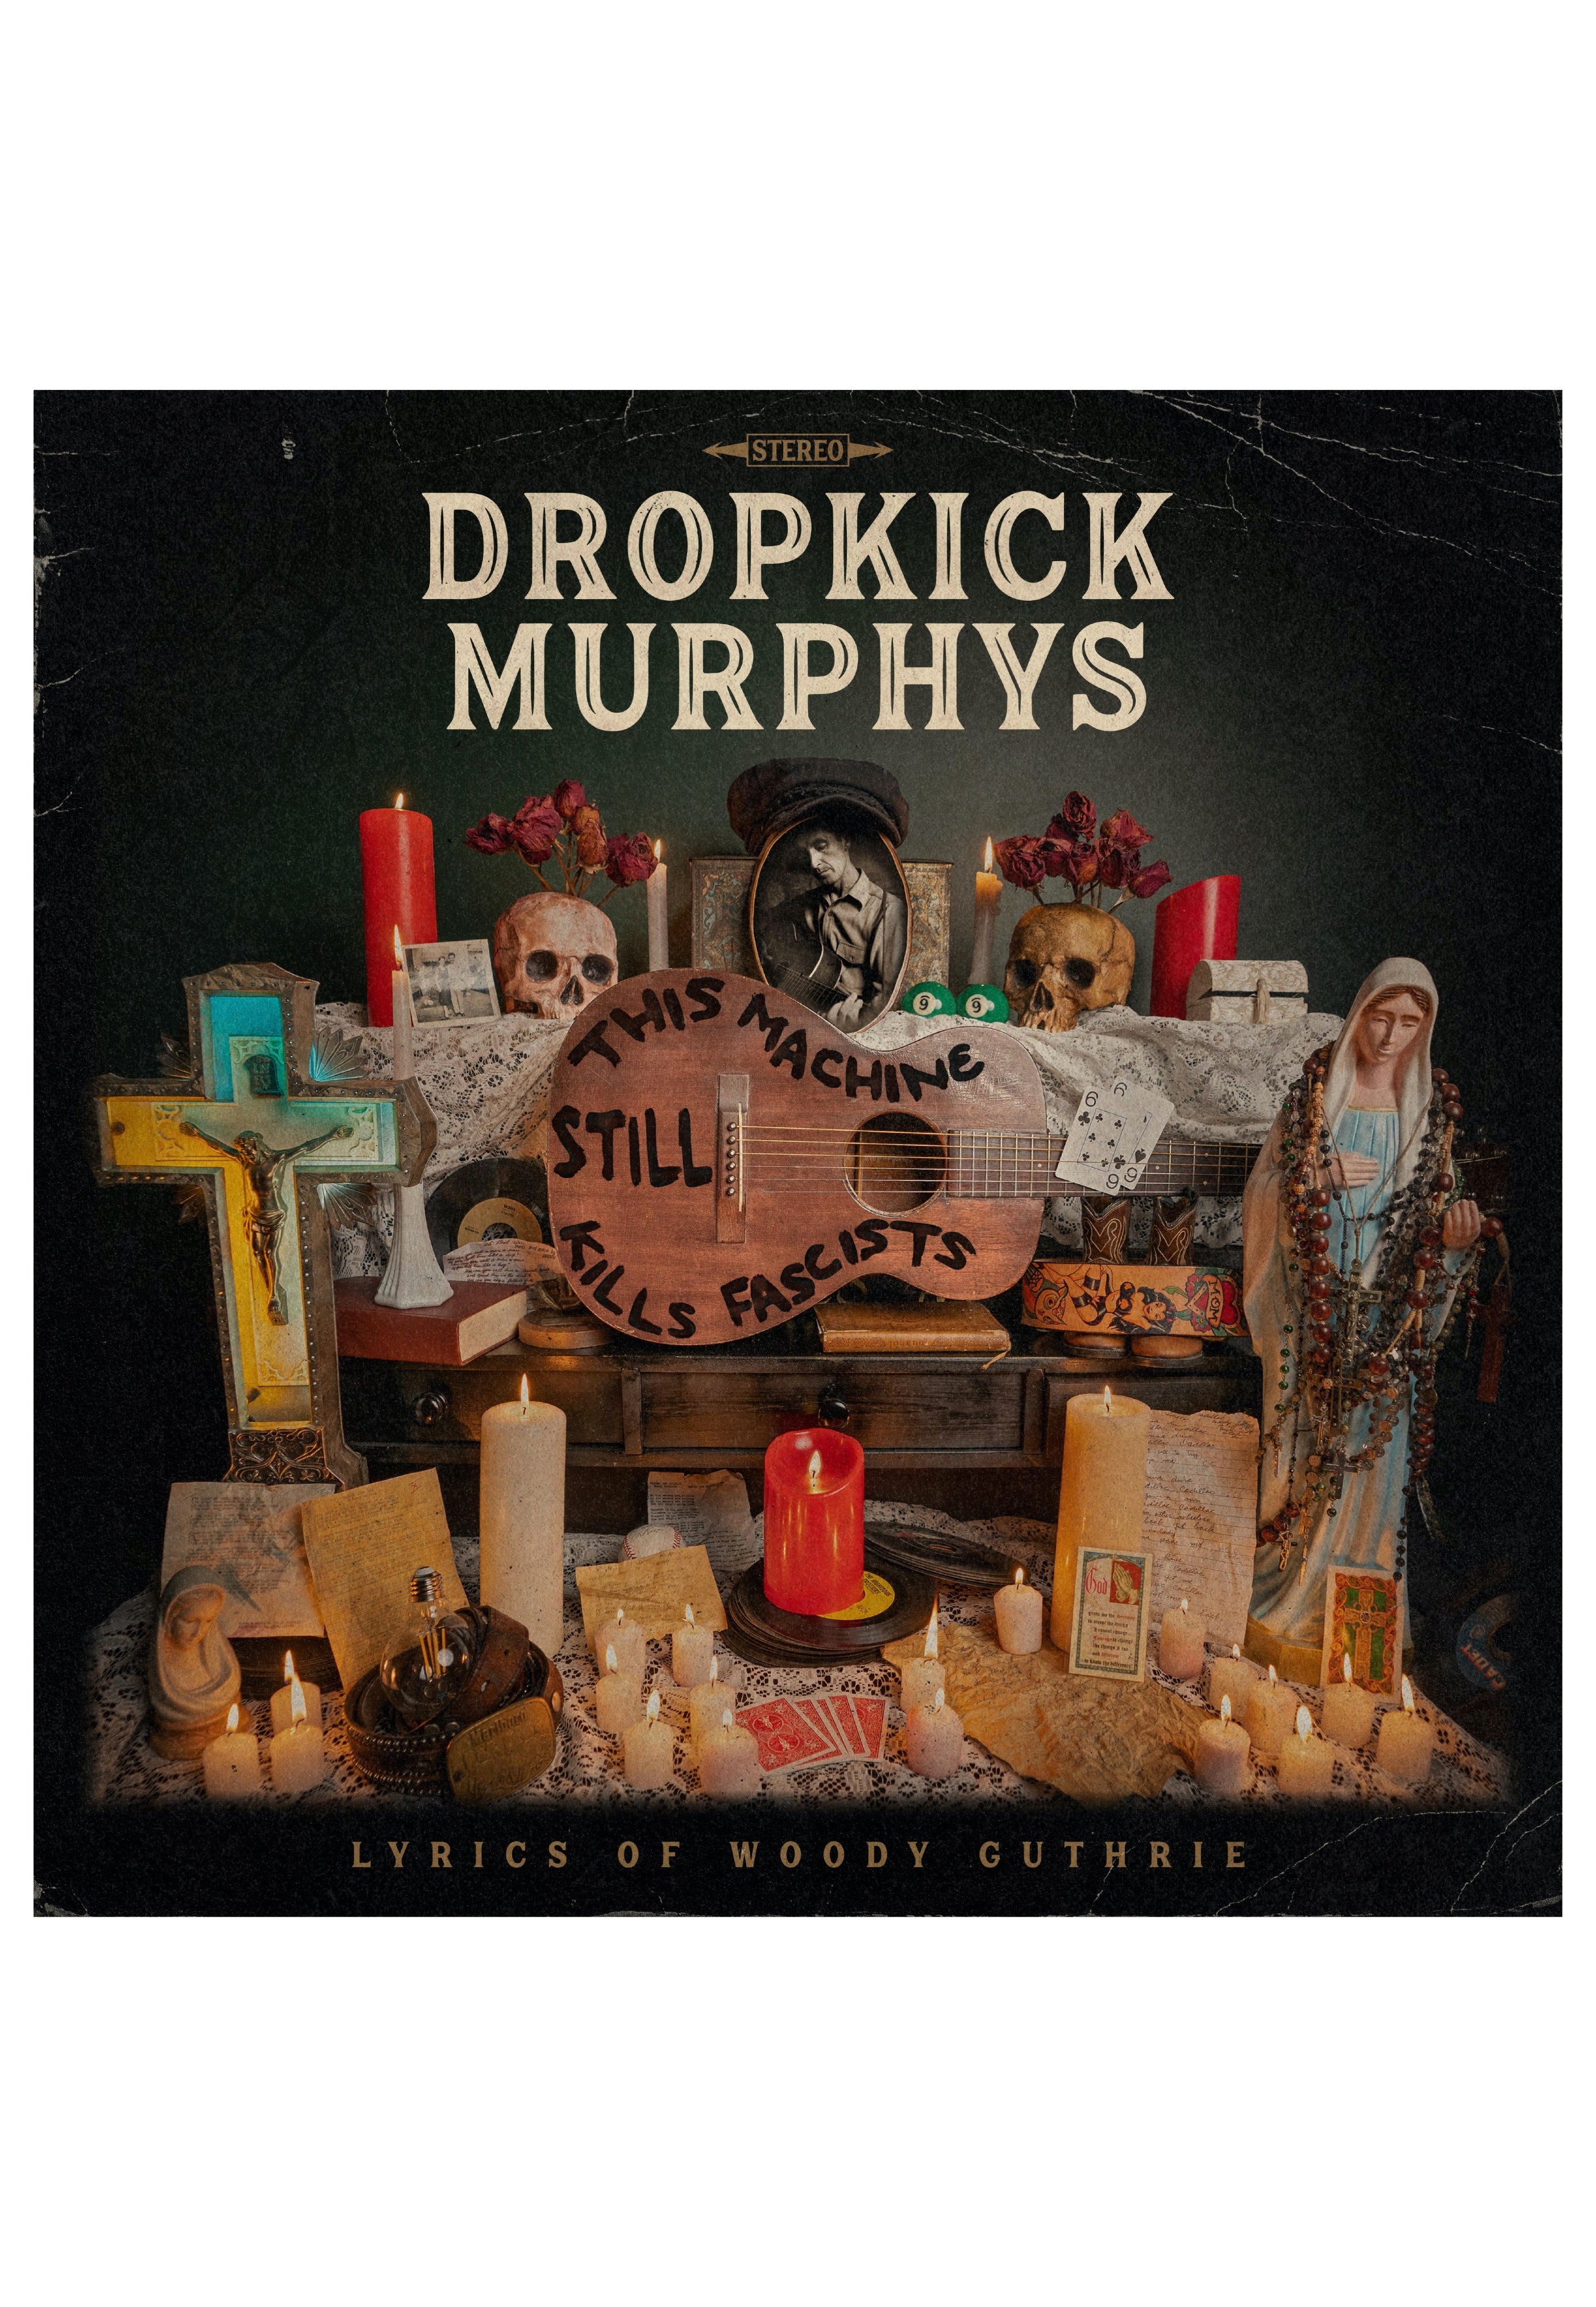 Dropkick Murphys feat. Woody Guthrie - This Machine Still Kills Fascists - CD